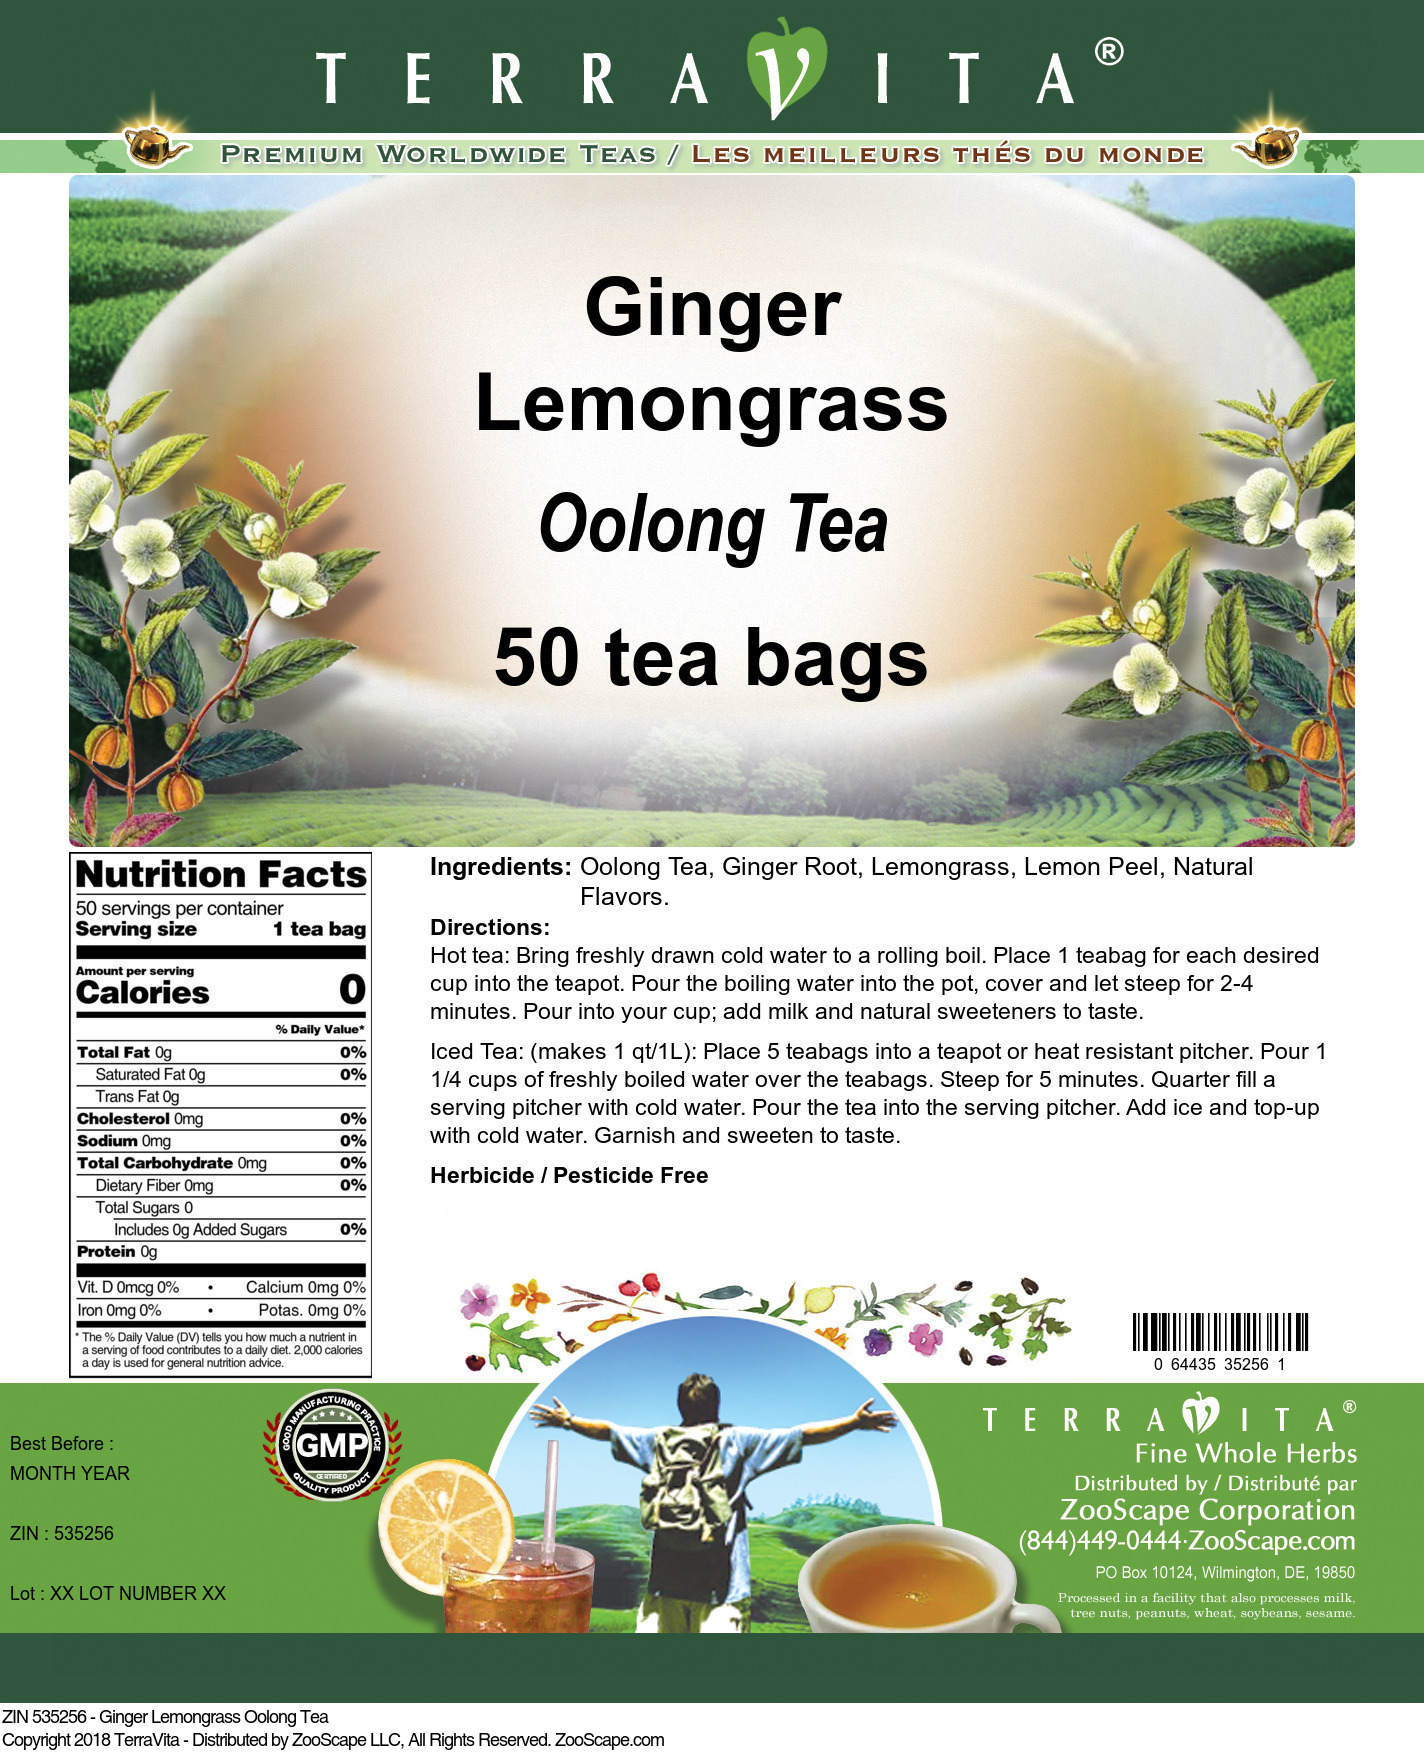 Ginger Lemongrass Oolong Tea - Label